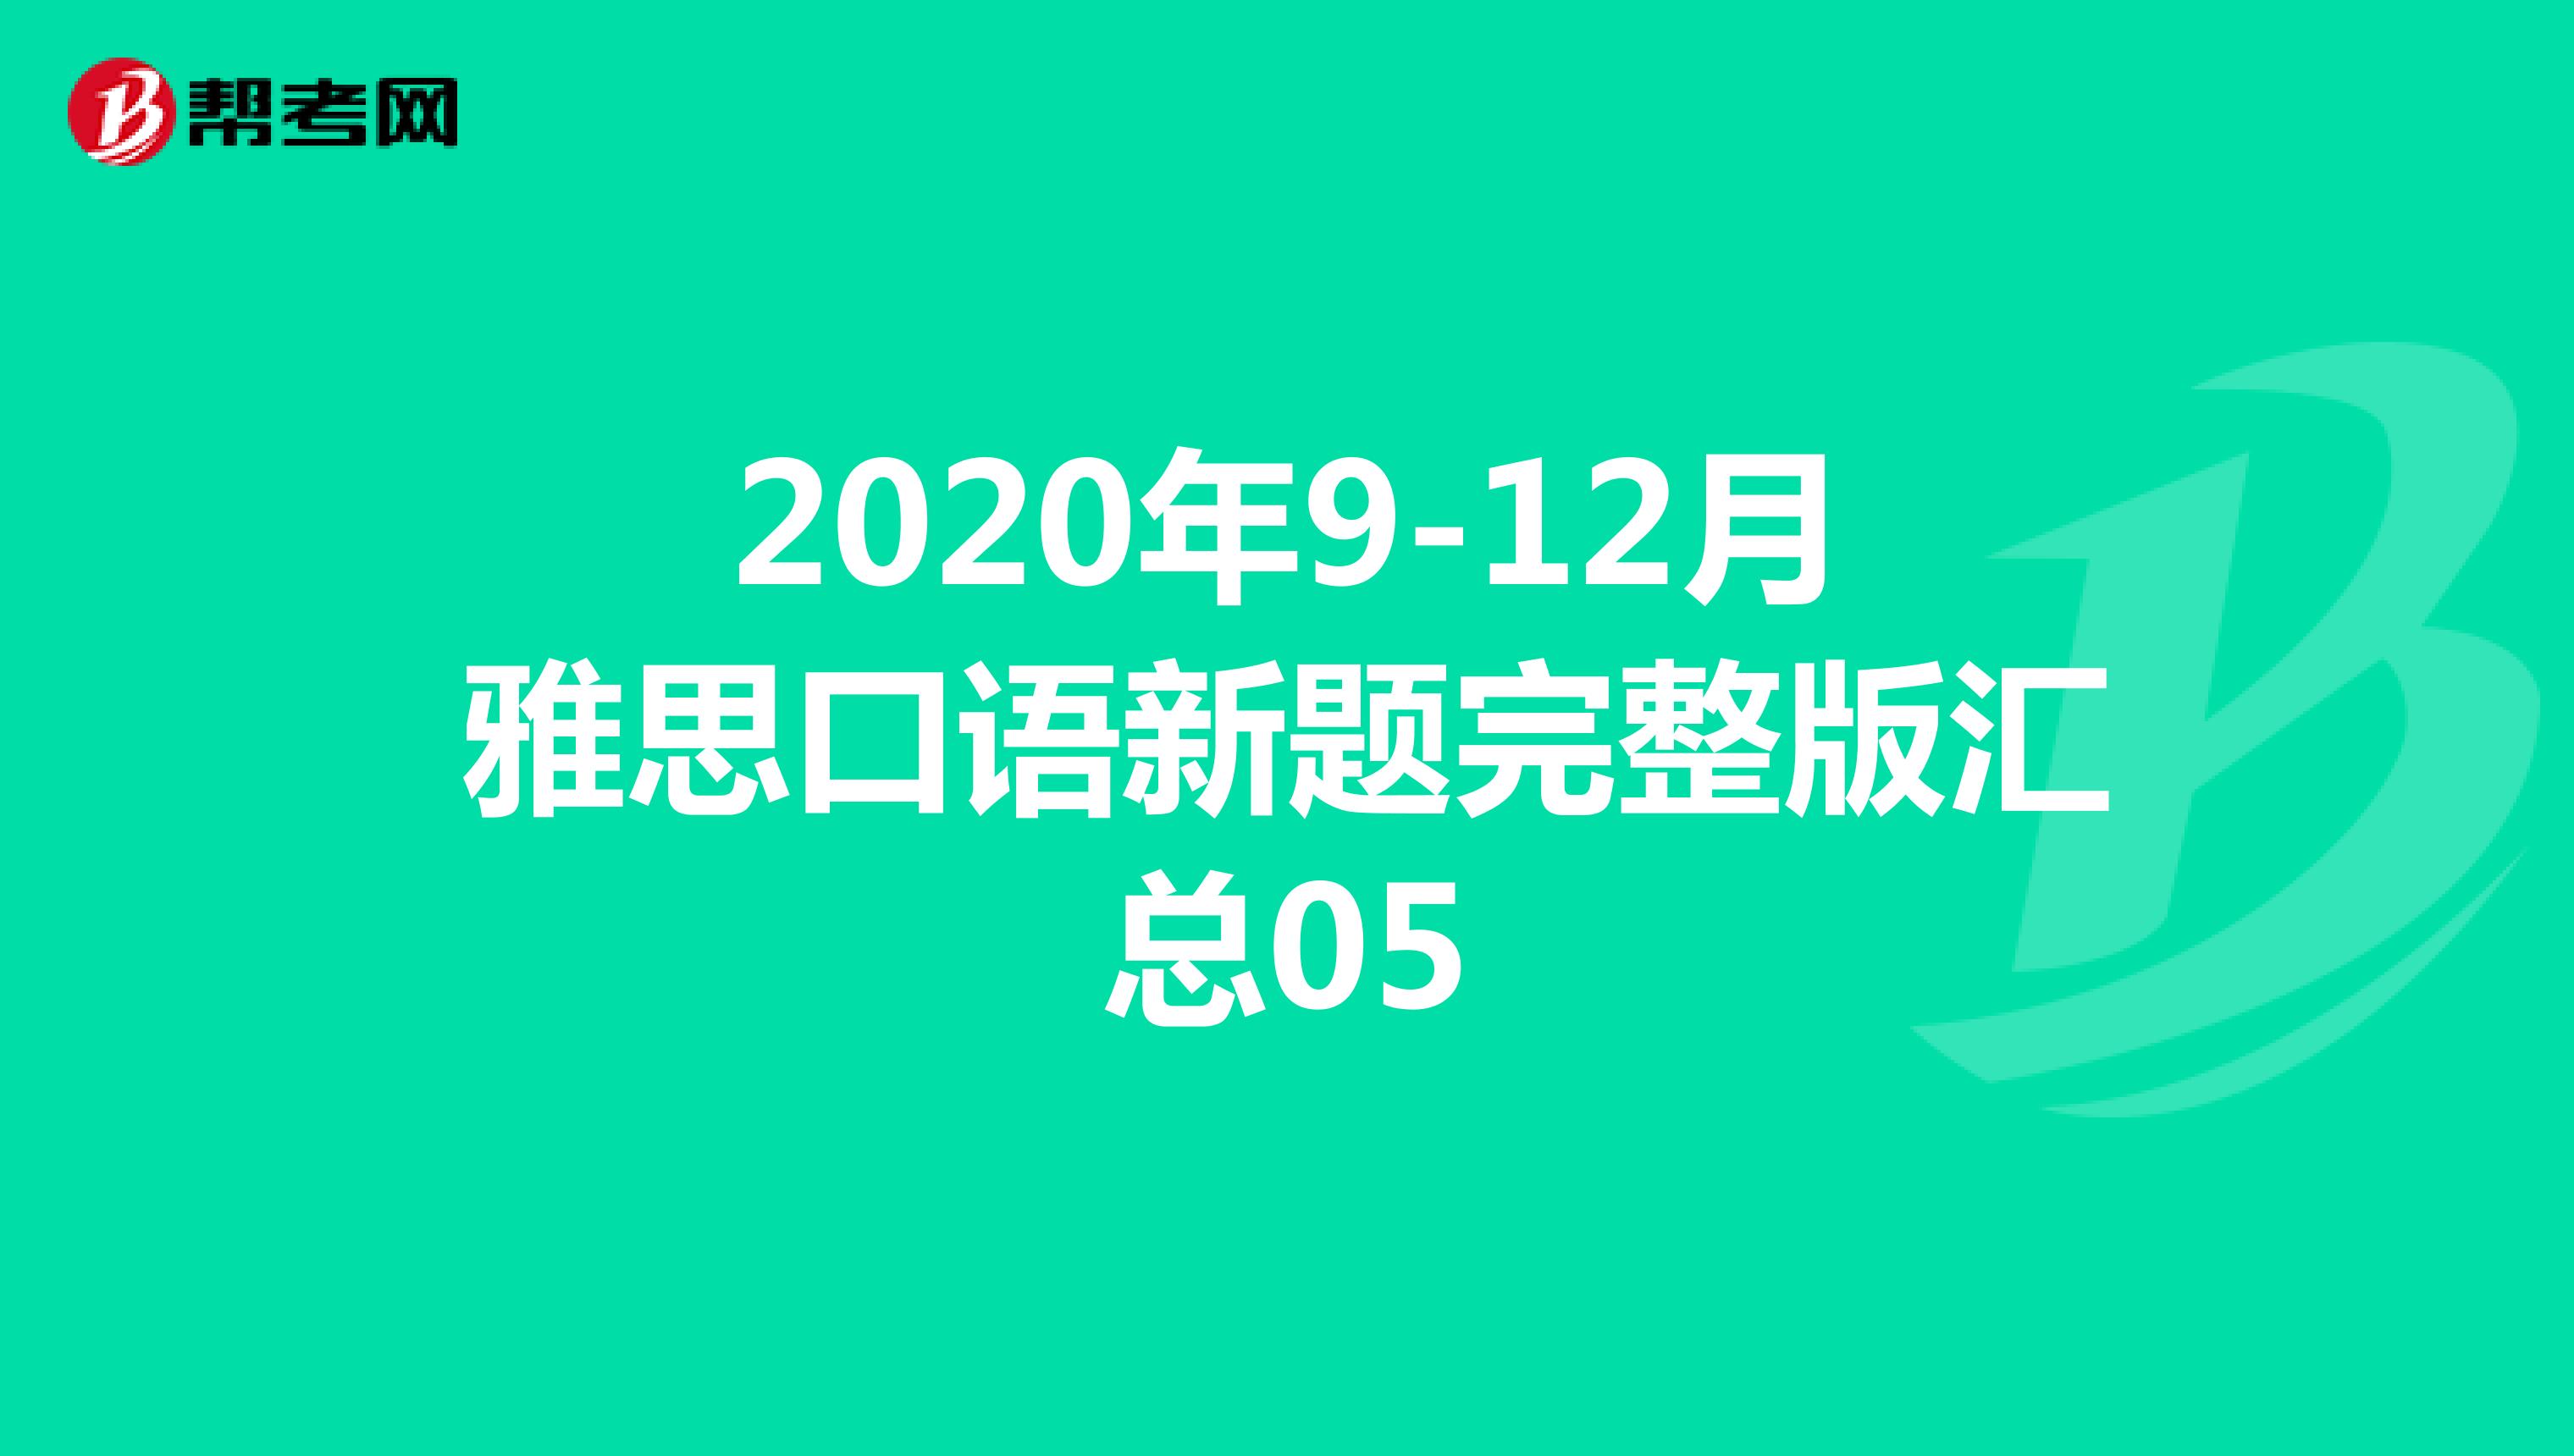 2020年9-12月雅思口语新题完整版汇总05